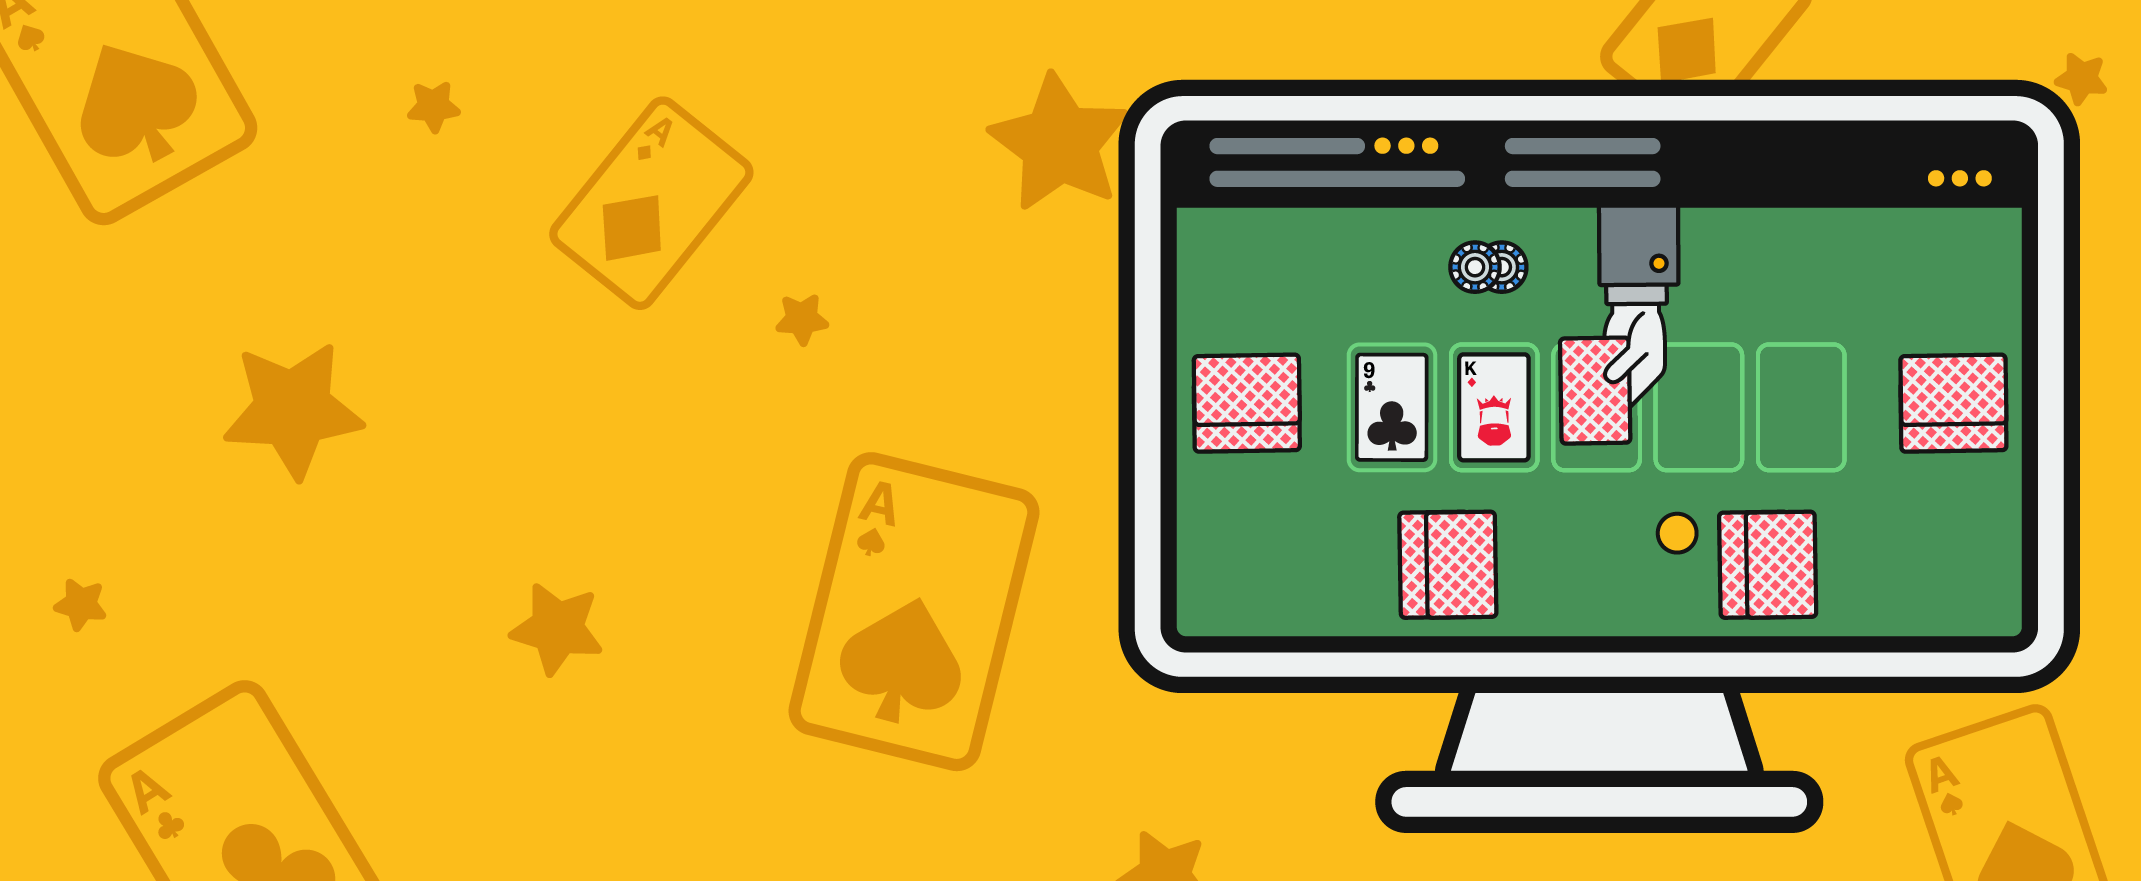 Die besten Online-Poker-Turniere